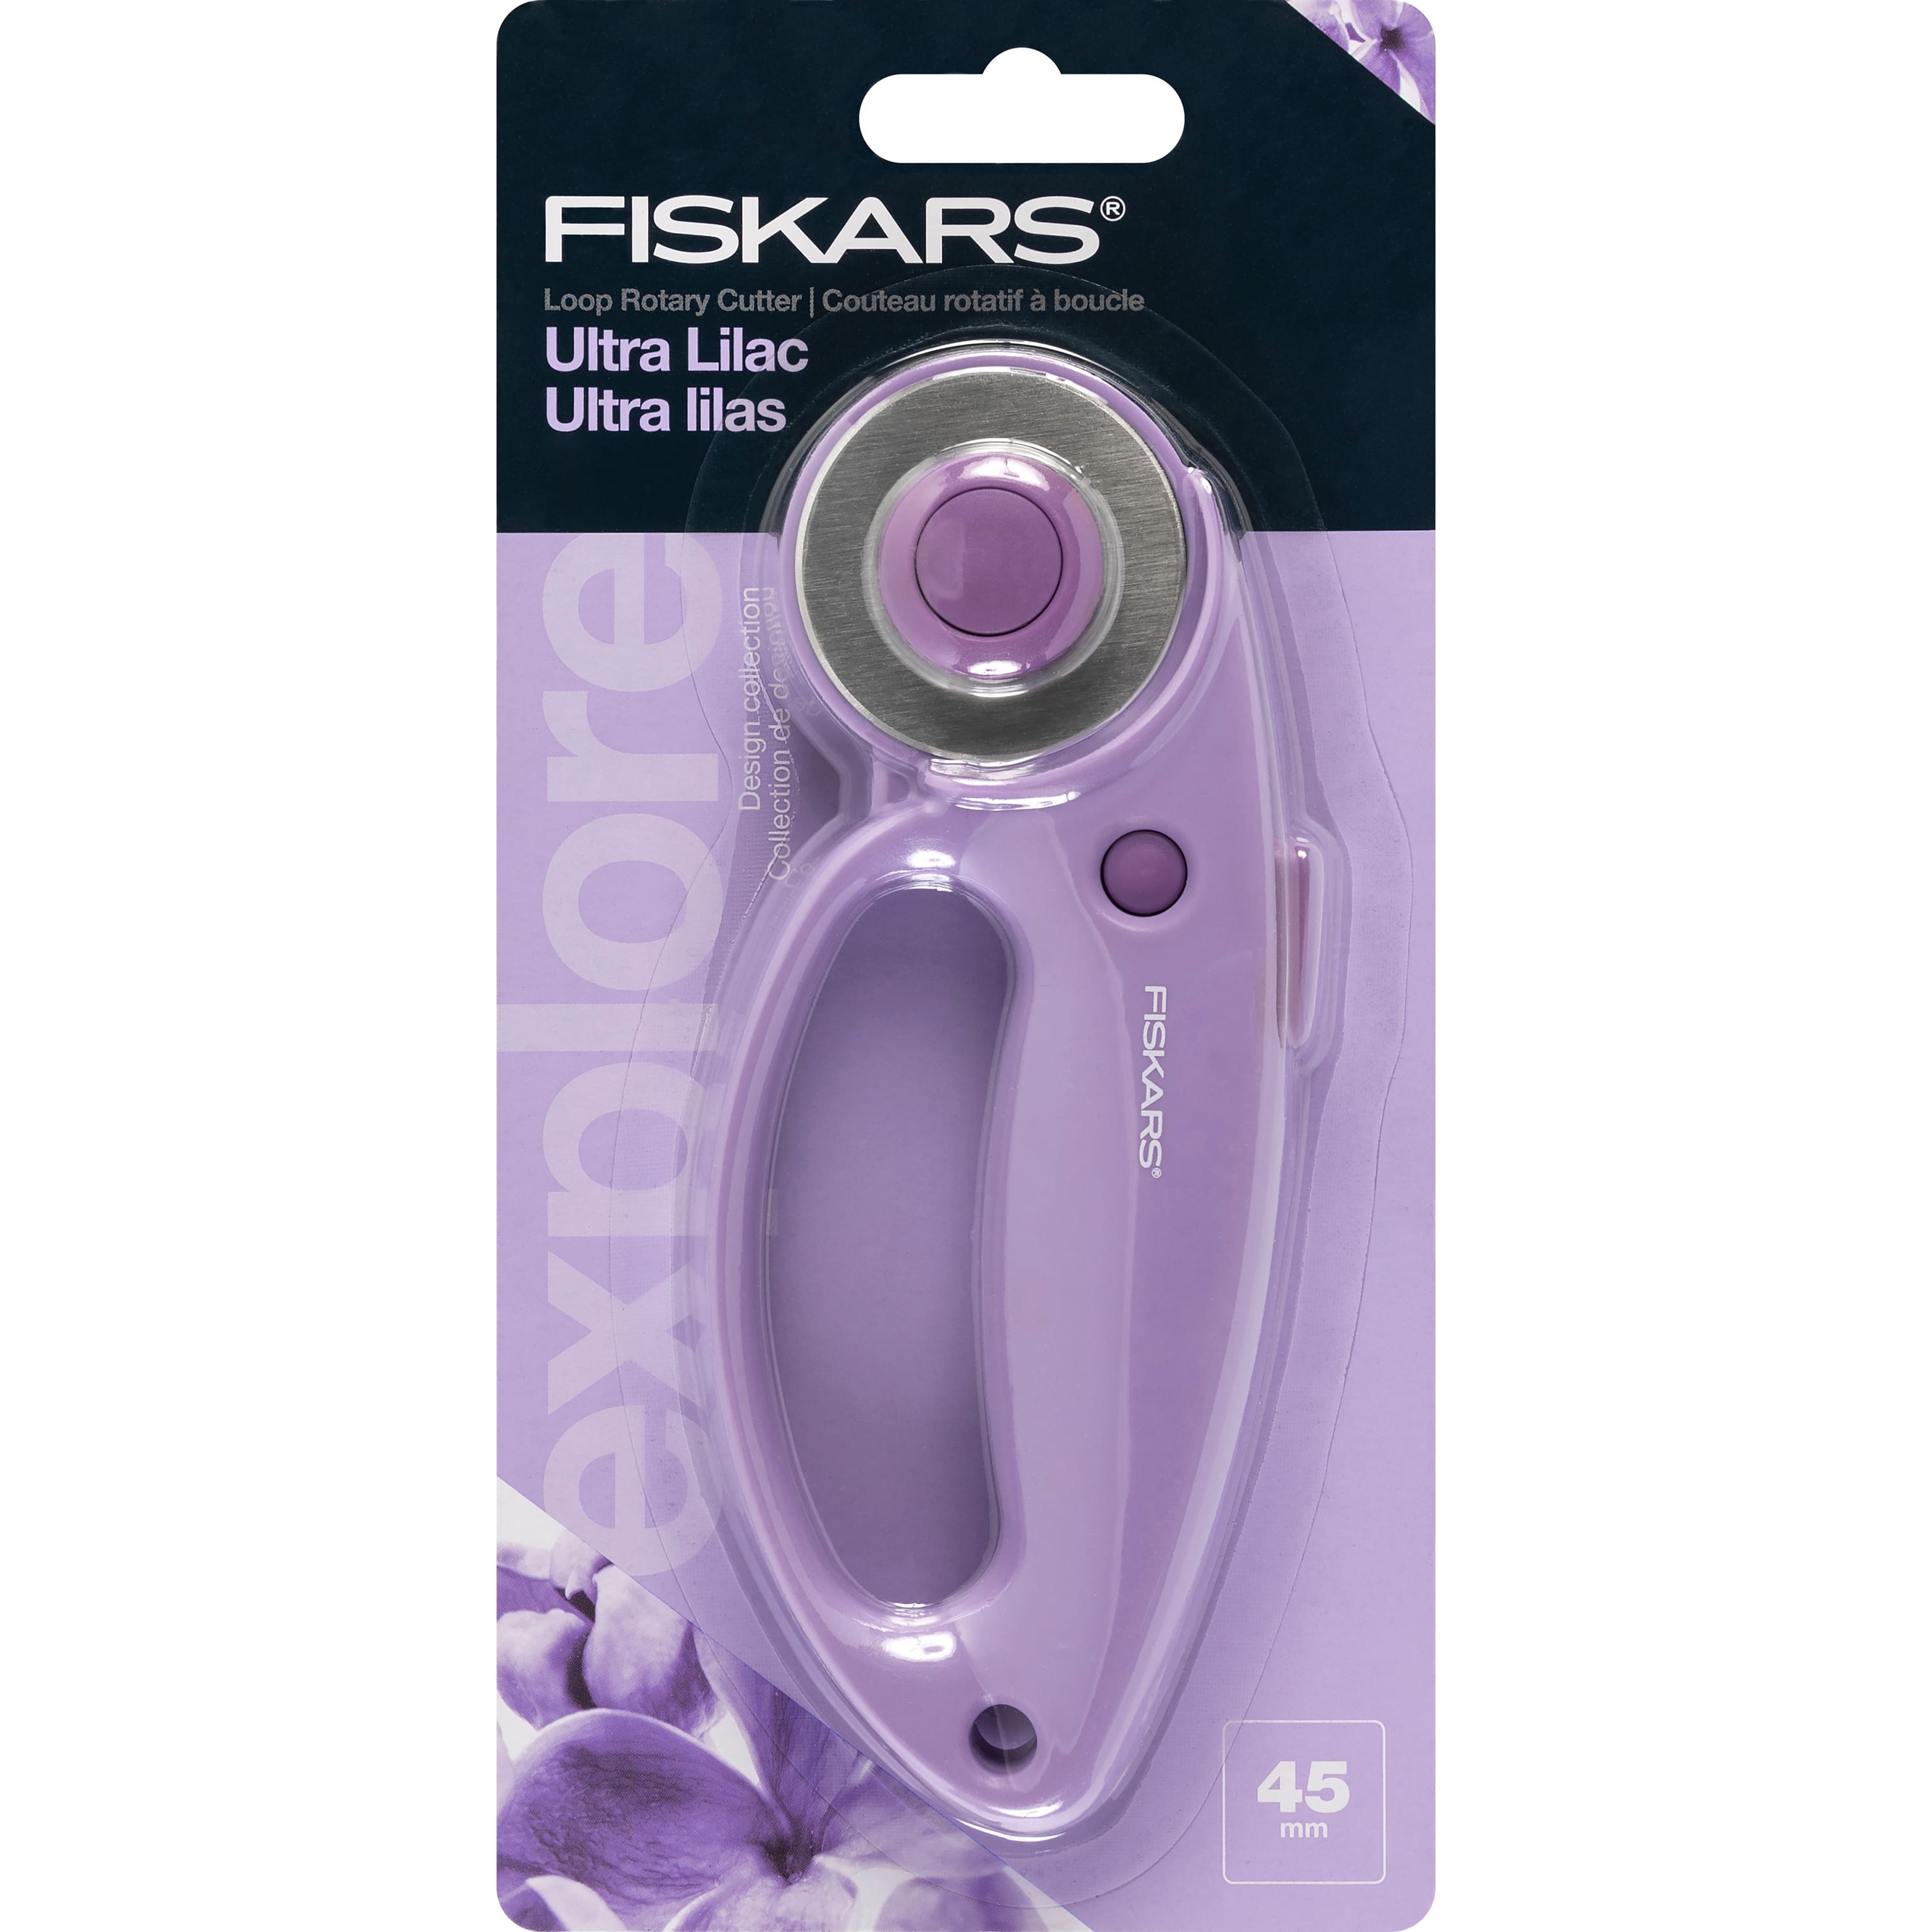 Fiskars 45mm Loop Rotary Cutter - Ultra Lilac - 6.61 x 2.68 in